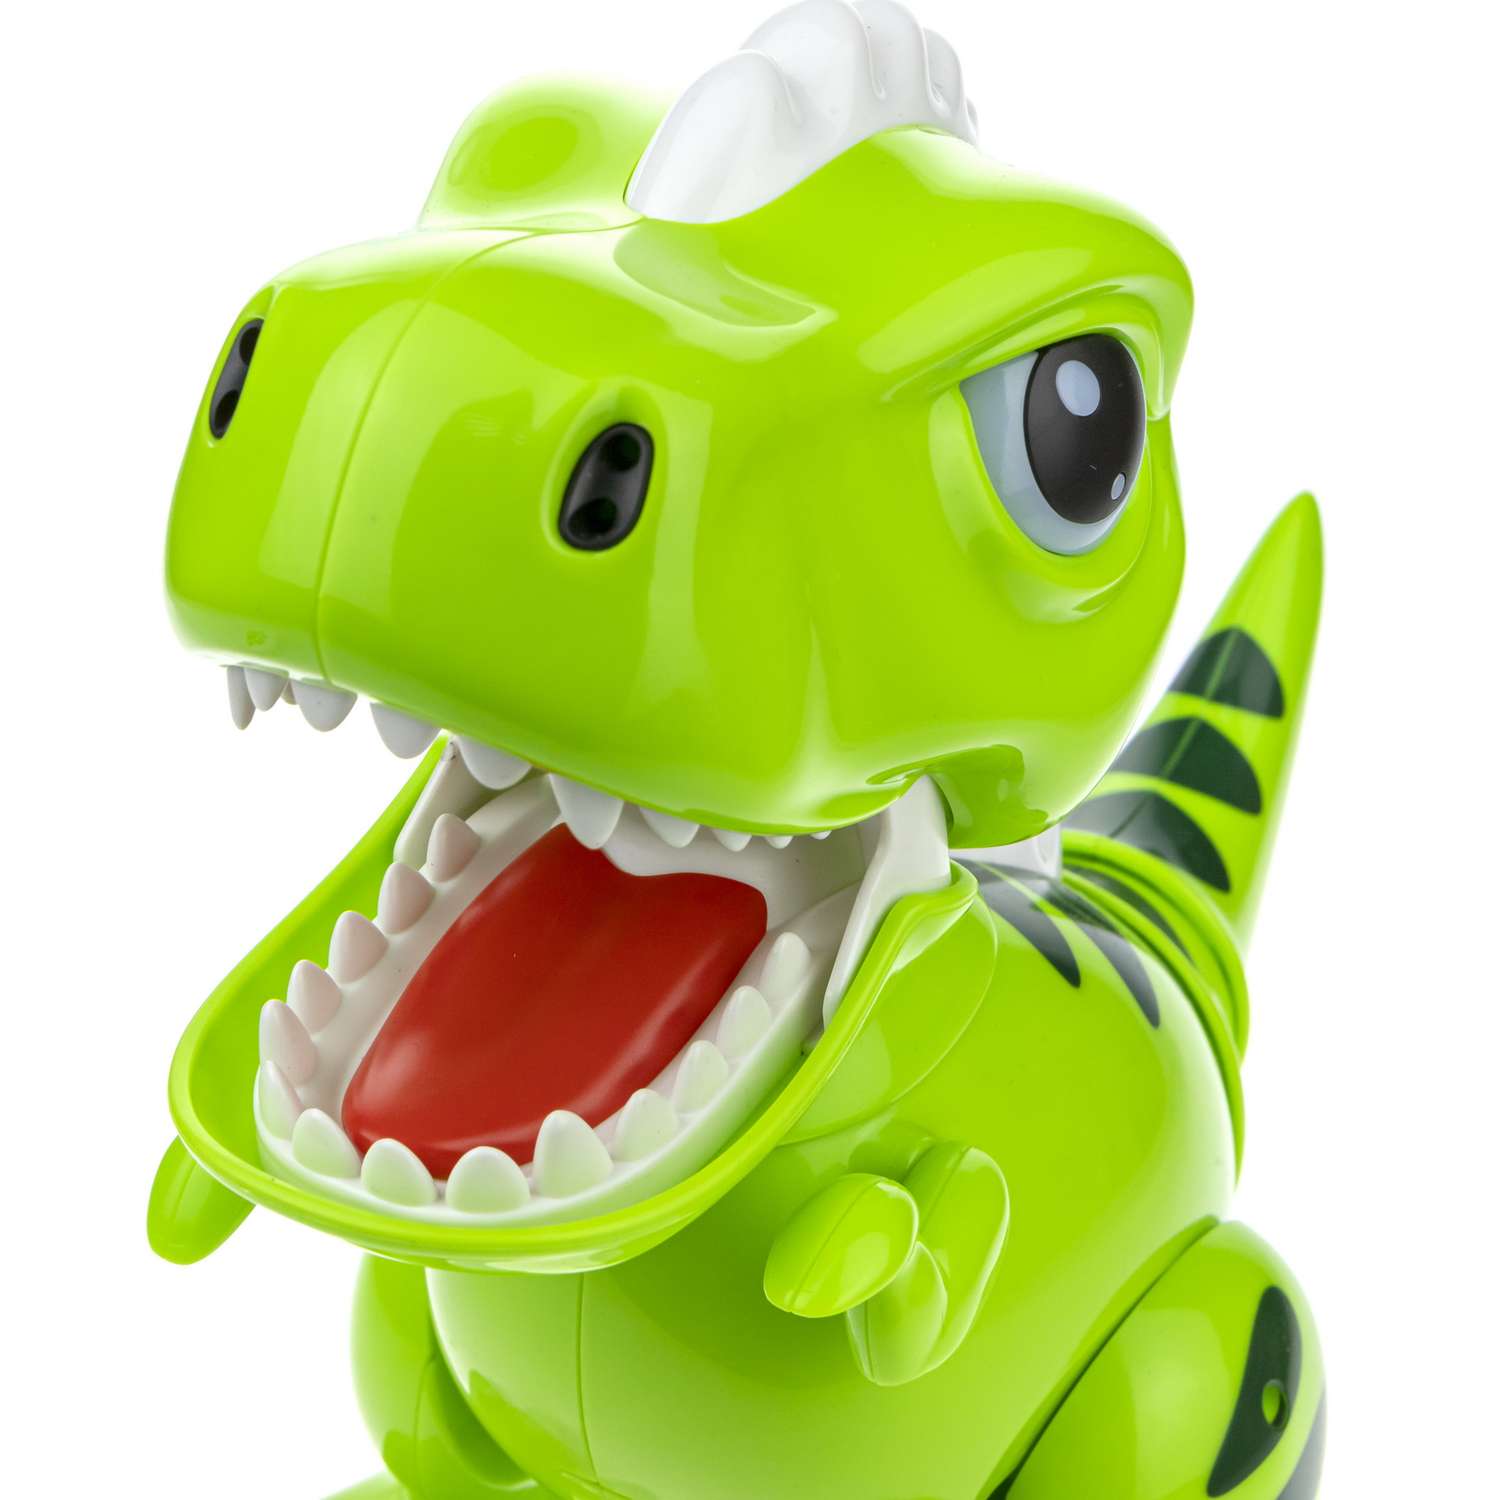 Интерактивная игрушка Robo Pets Динозавр Т-РЕКС зеленый на РУ со световыми звуковыми и эффектами движения - фото 9